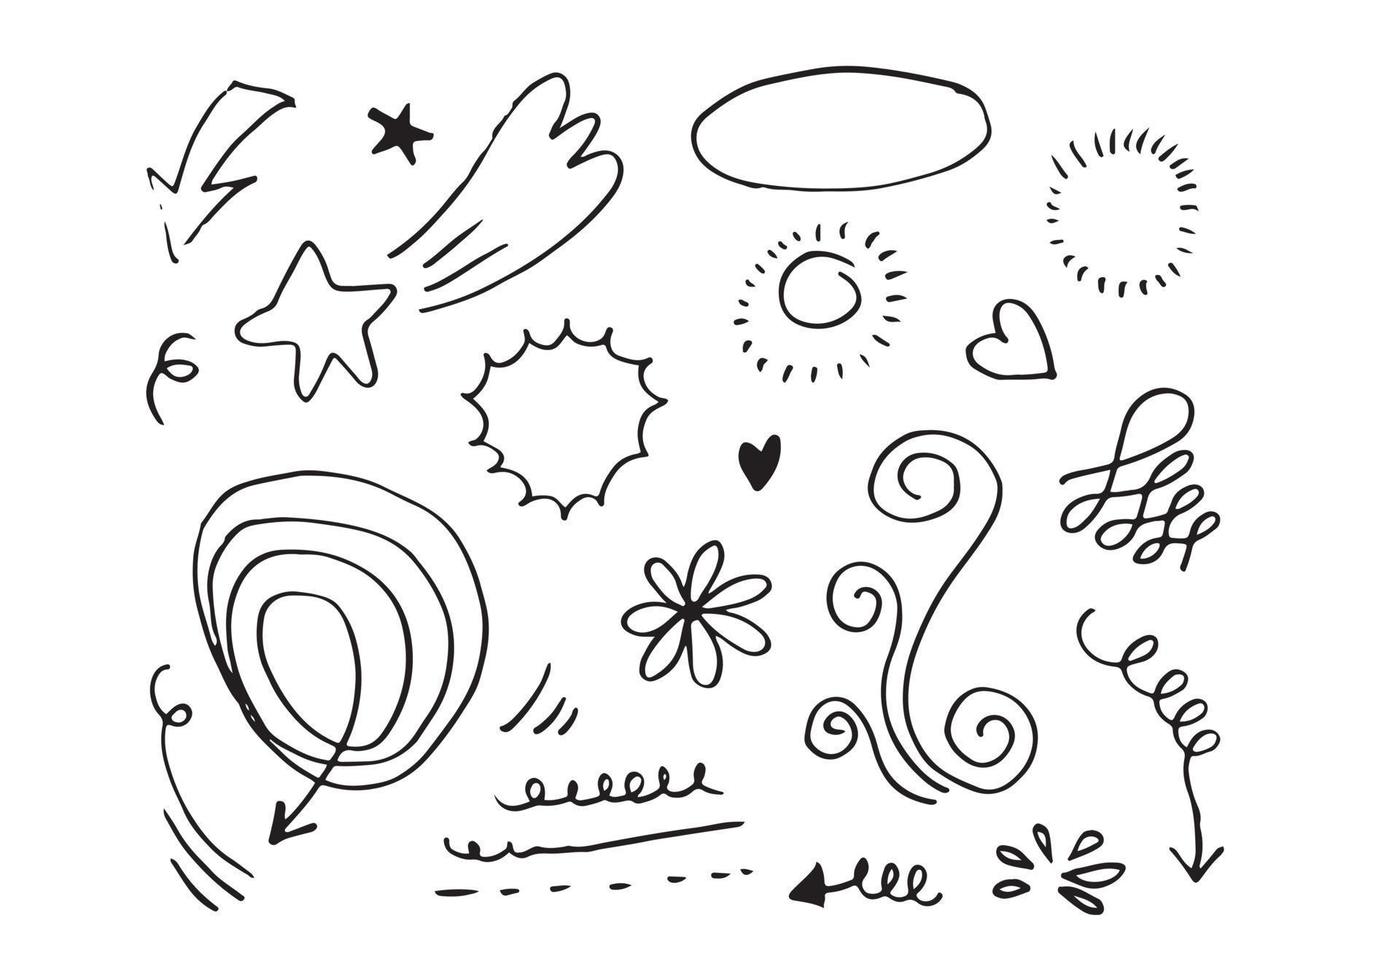 handritad uppsättning doodle element för konceptdesign isolerad på vit bakgrund. vektor illustration.